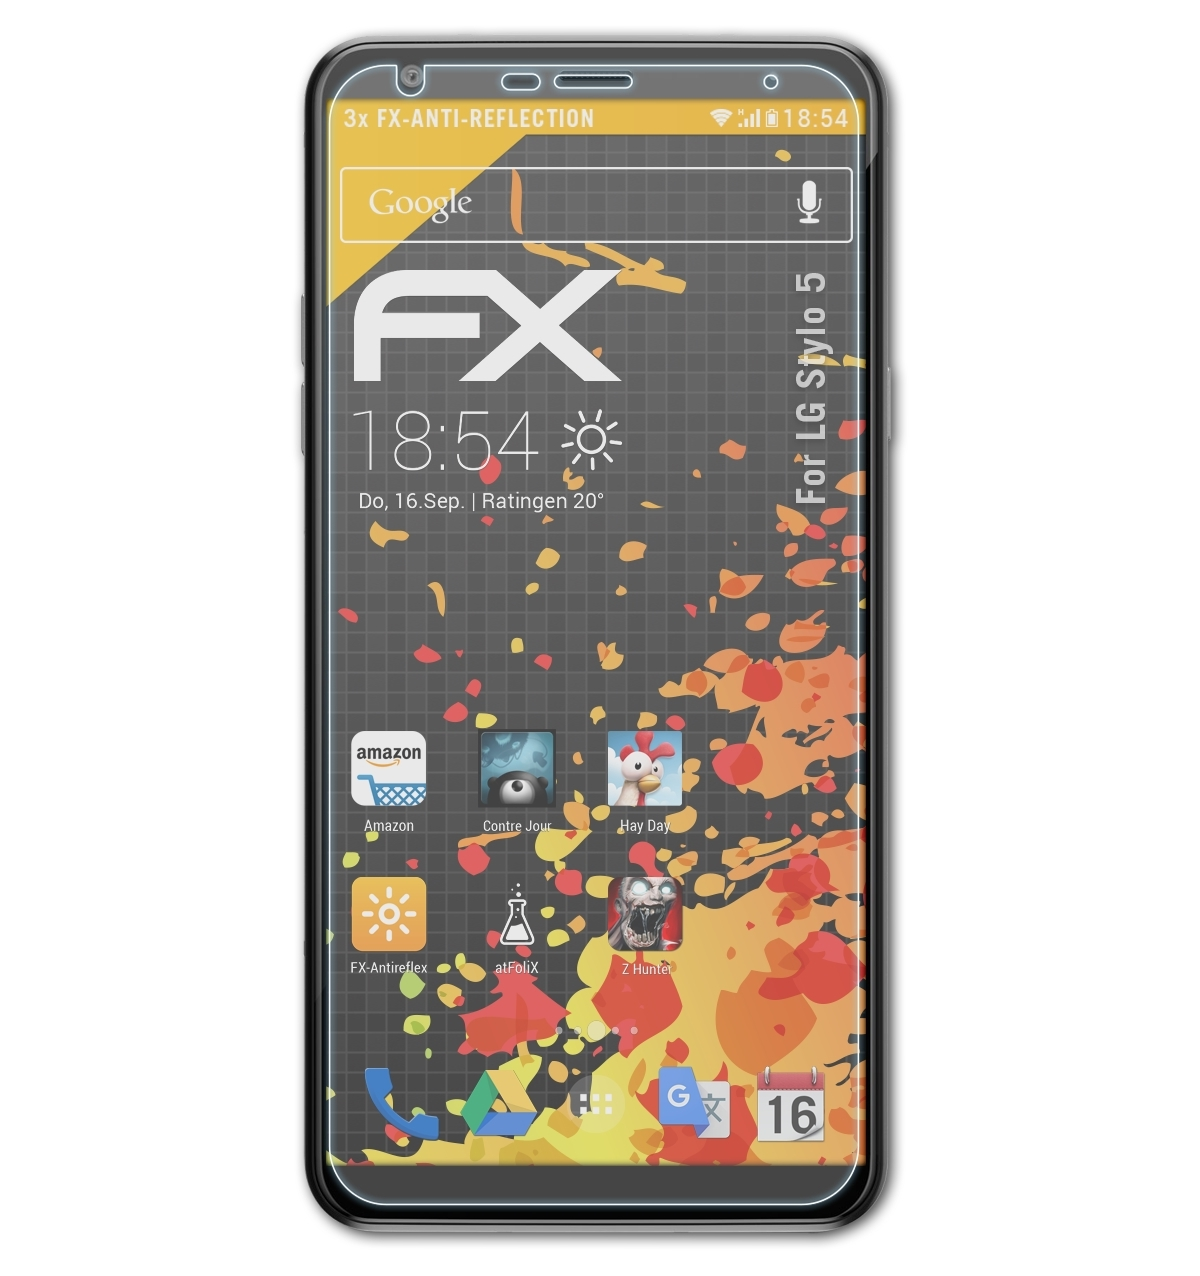 ATFOLIX 3x FX-Antireflex Stylo LG 5) Displayschutz(für